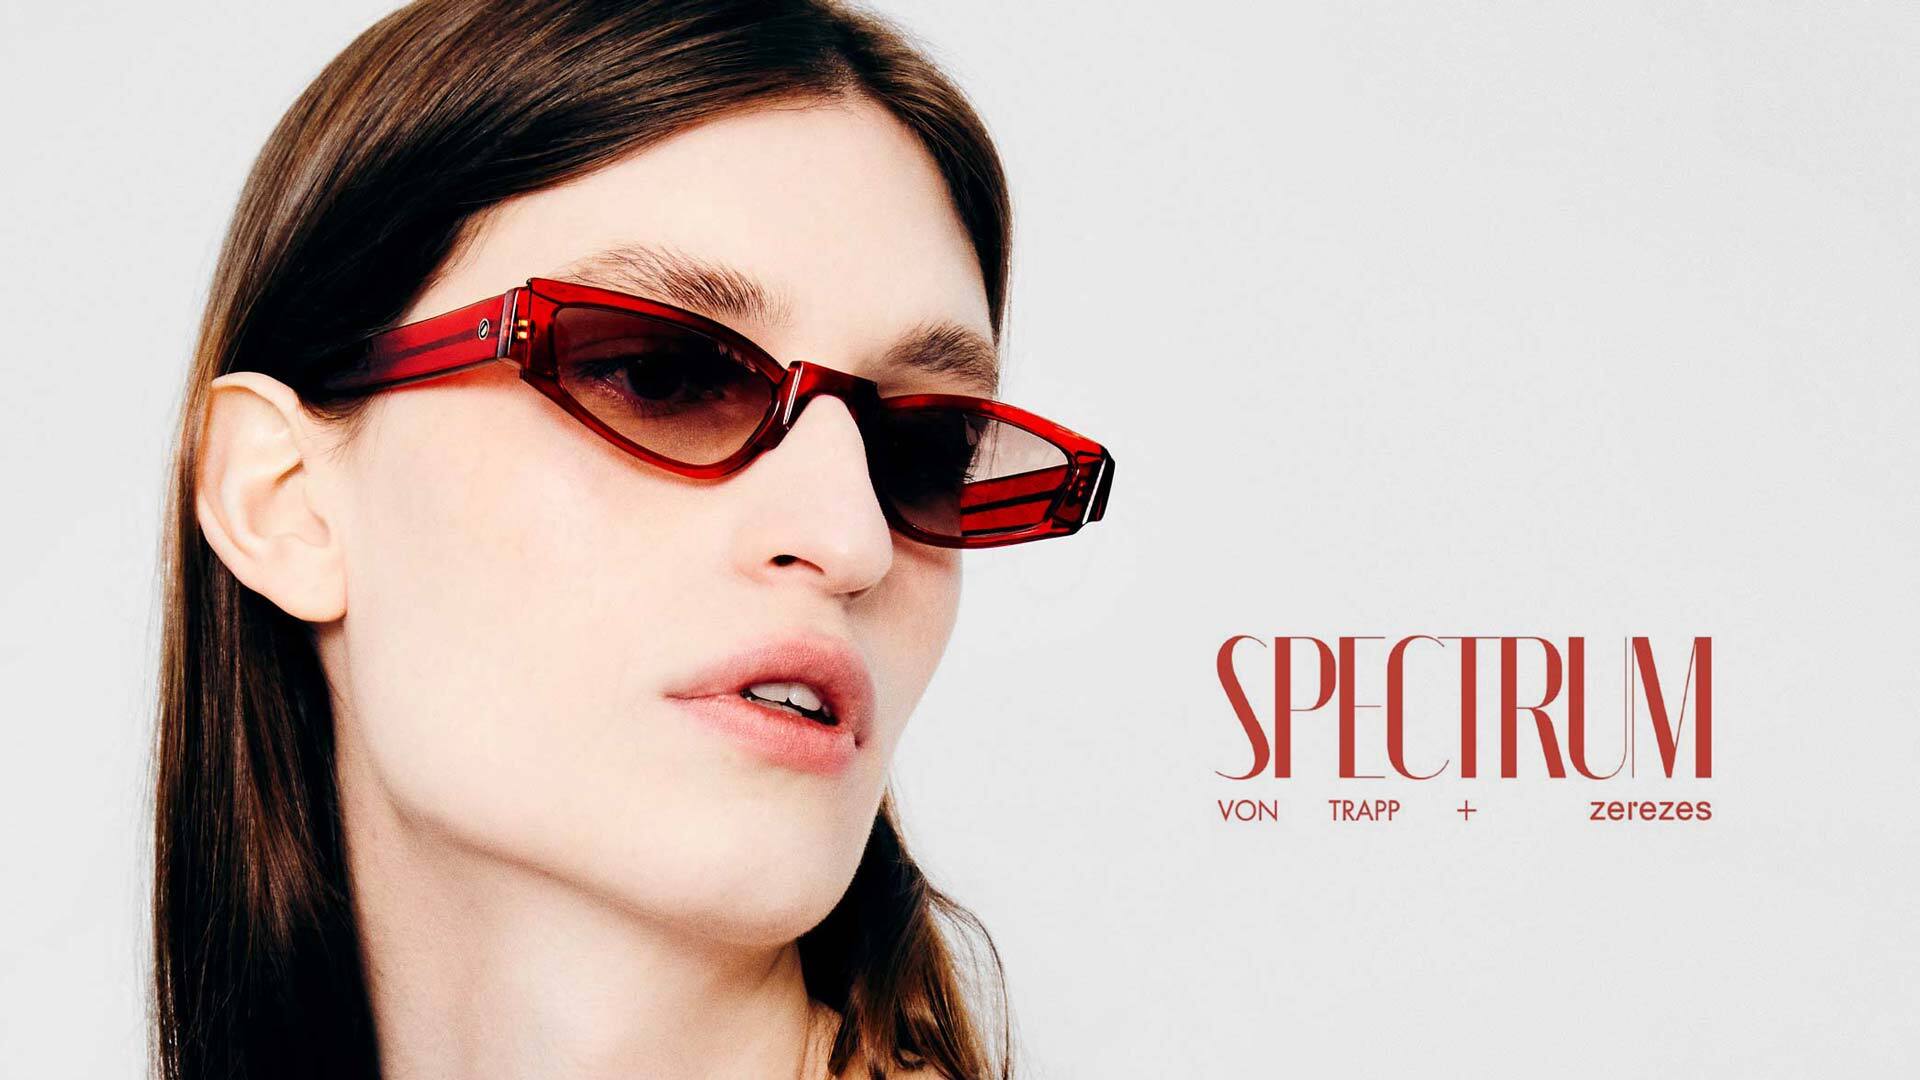 Imagem de uma mulher com o óculos spectrum